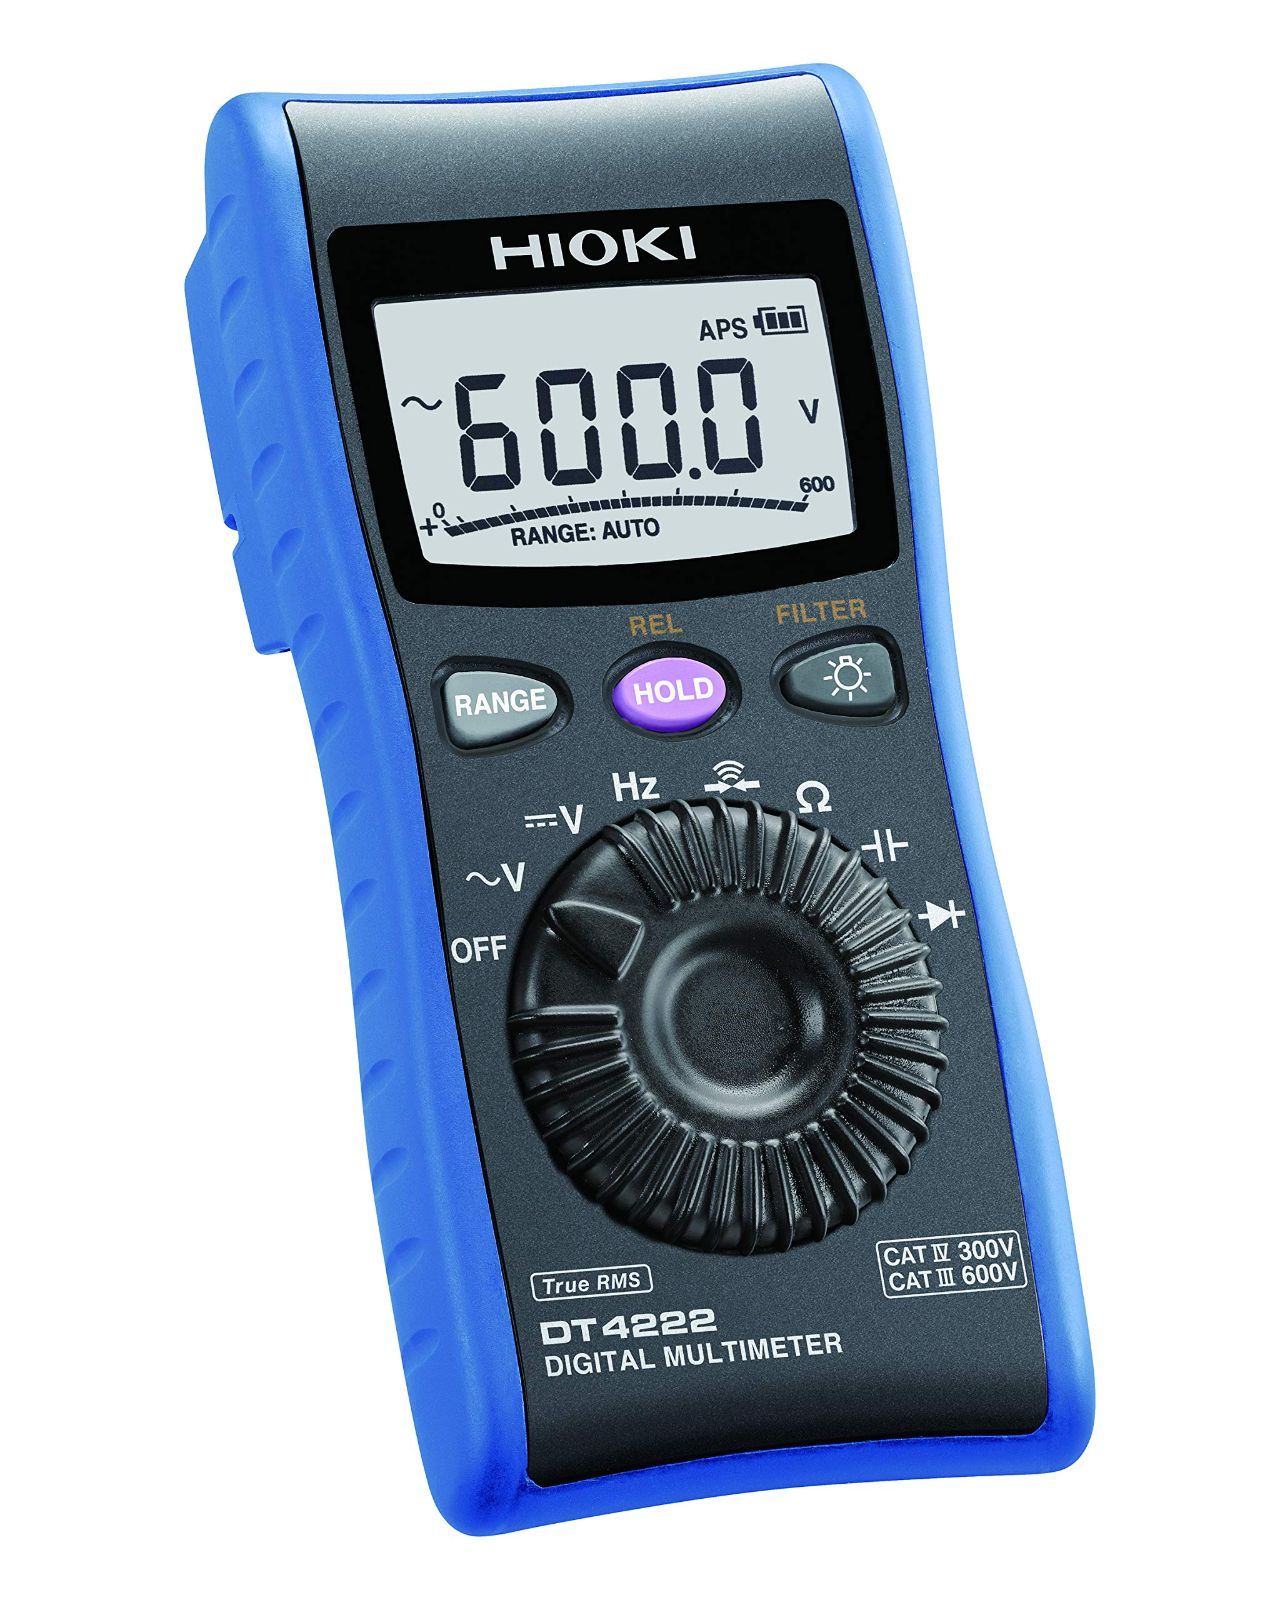 HIOKI (日置電機) デジタルマルチメータ DT4261-90 (NEWスタンダード